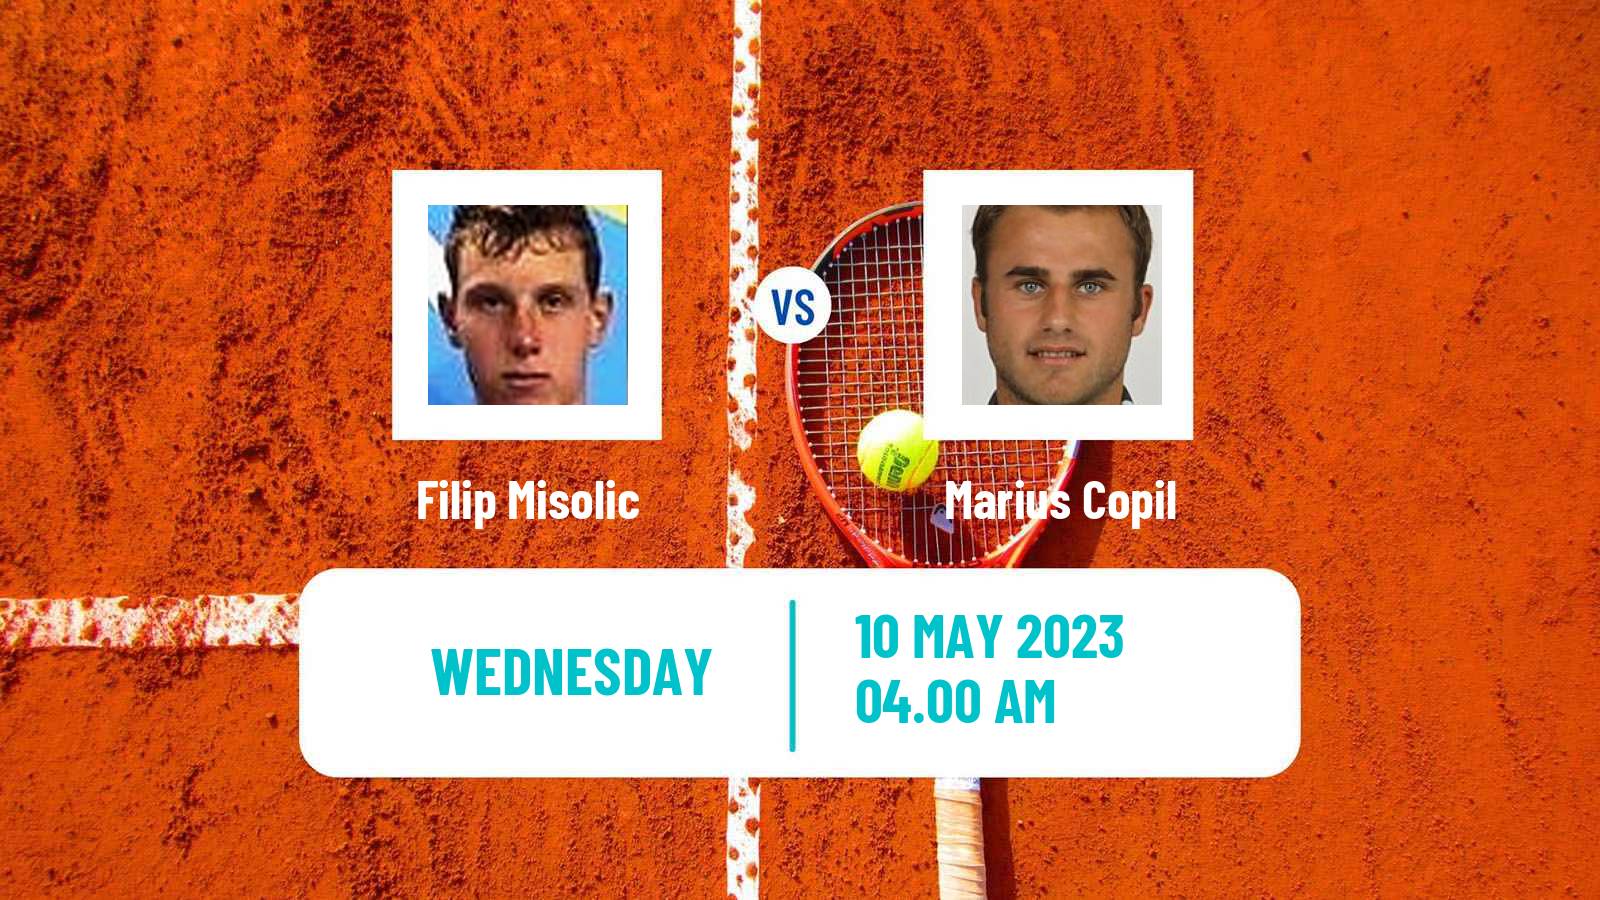 Tennis ATP Challenger Filip Misolic - Marius Copil